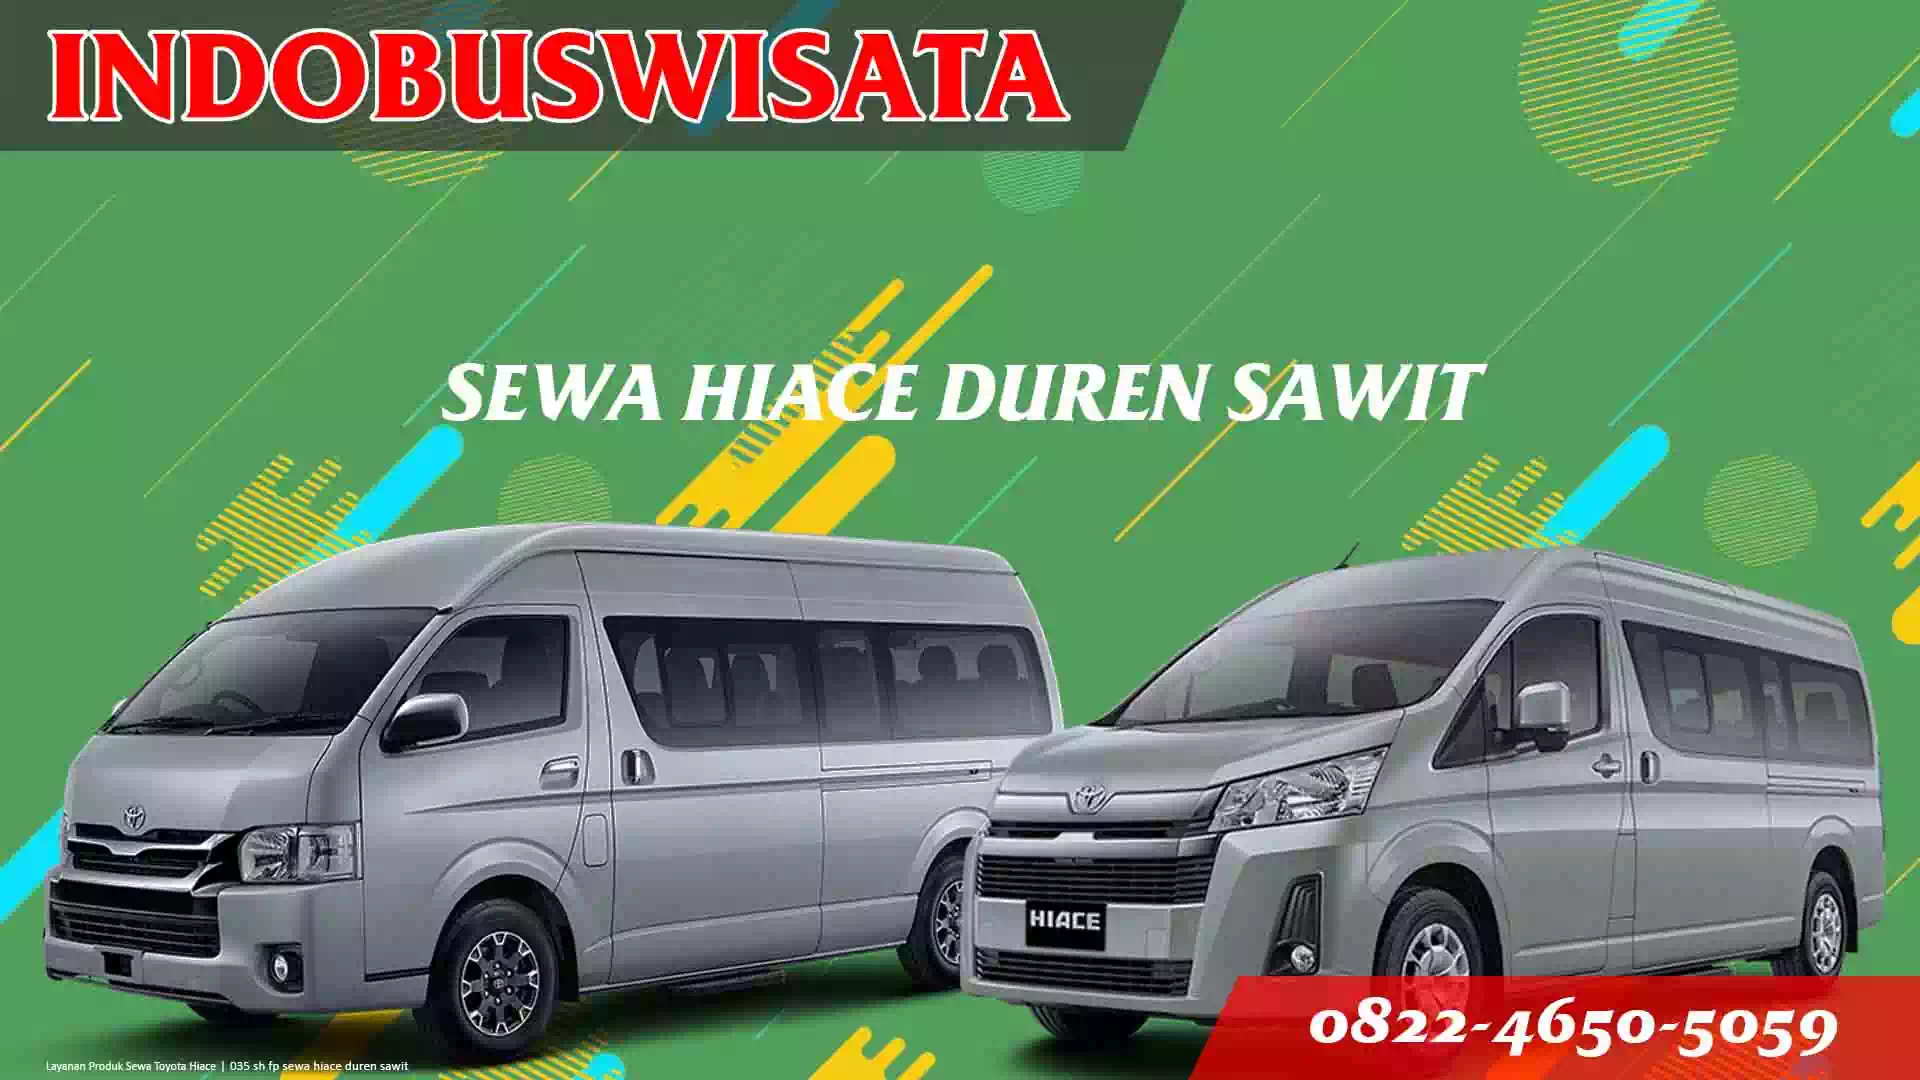 035 Sh Fp Sewa Hiace Duren Sawit Indobuswisata